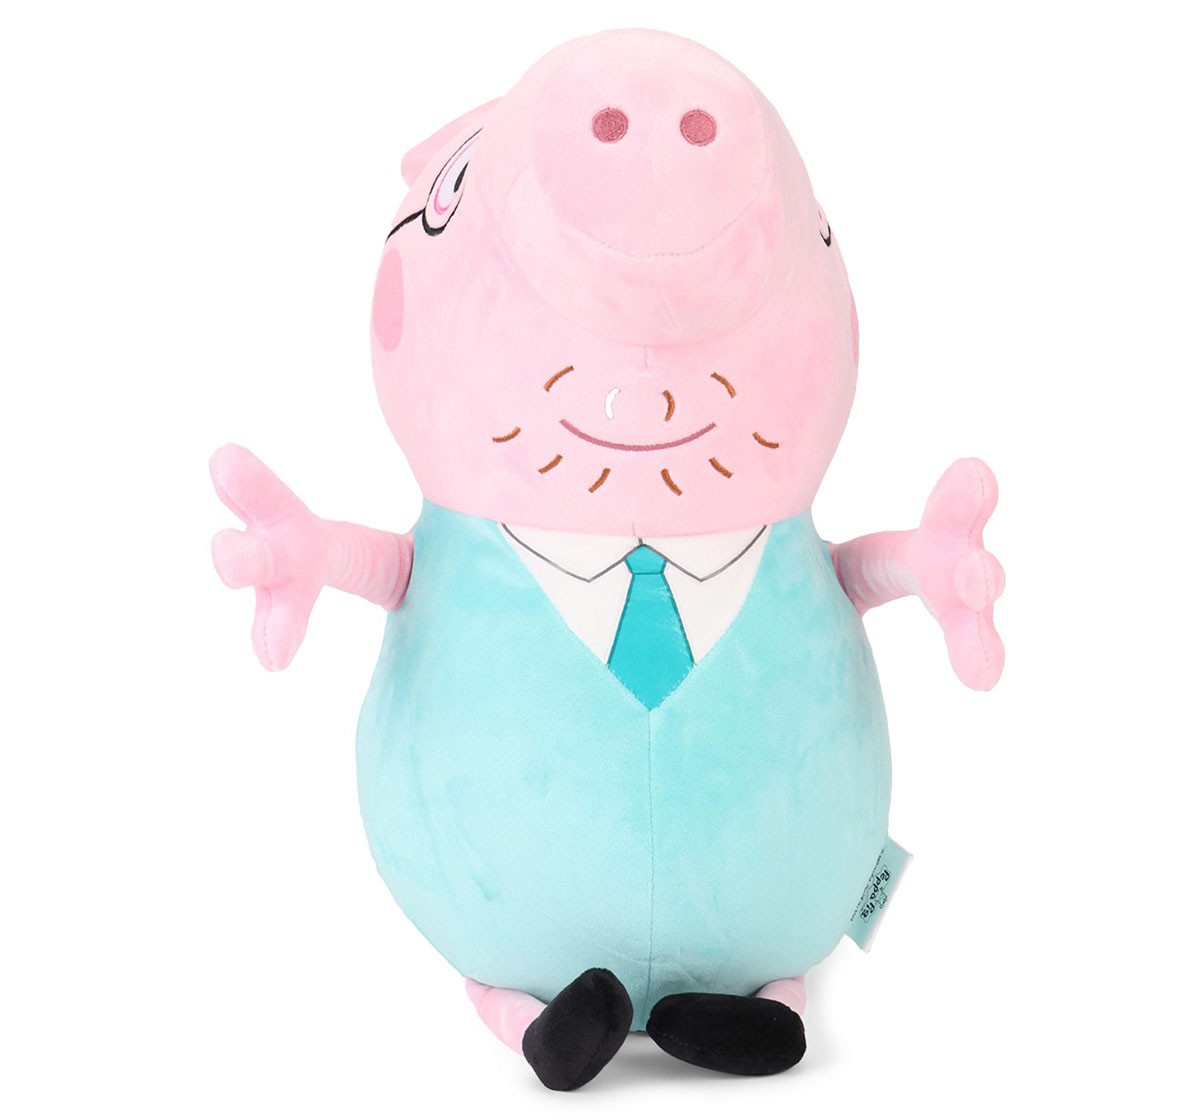 Daddy Pig Plush 46 Cm, 0M+ (Multicolor)